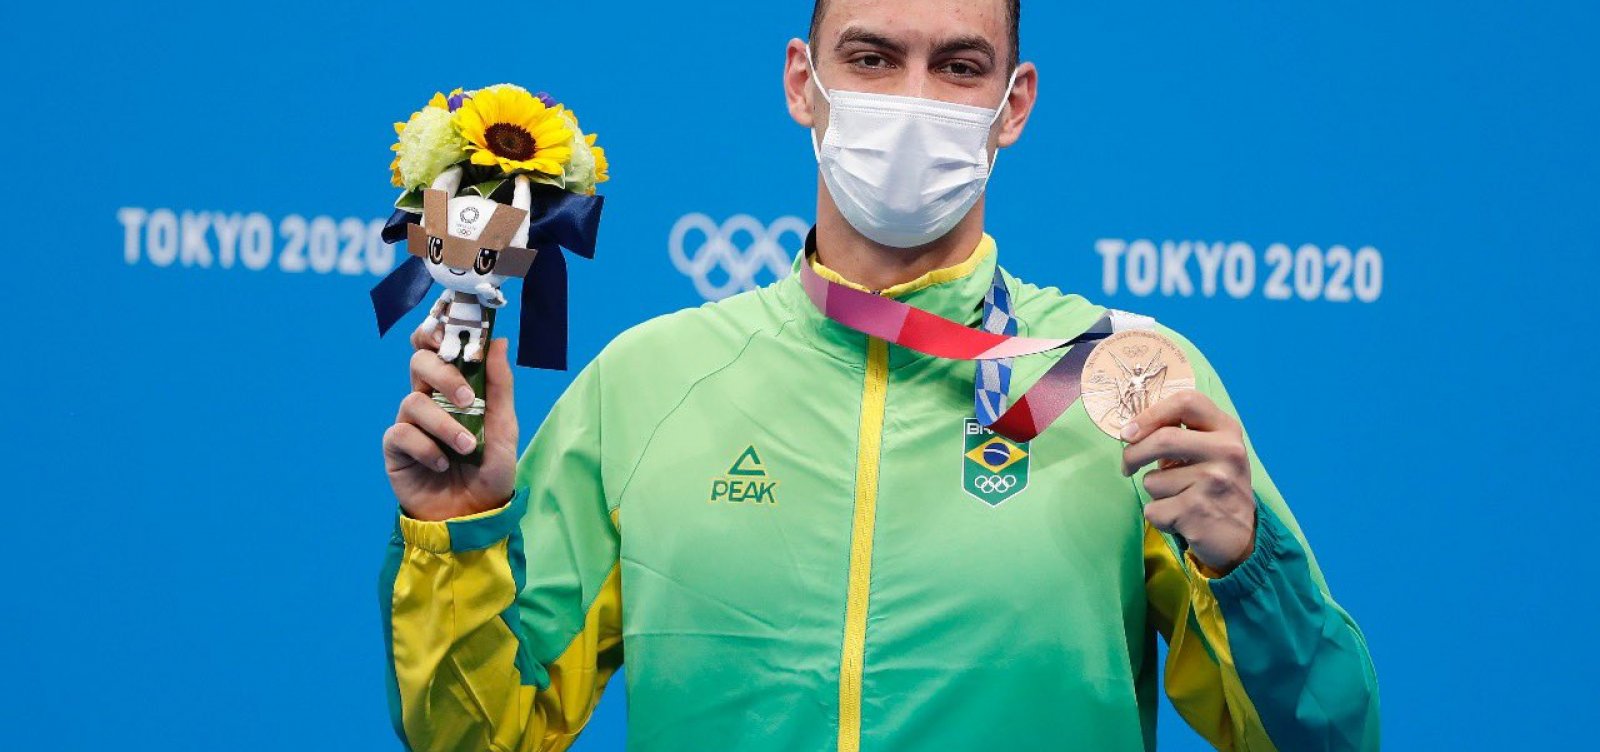 Depois de jejum em 2016, Natação brasileira ganha medalha de bronze em Tóquio 